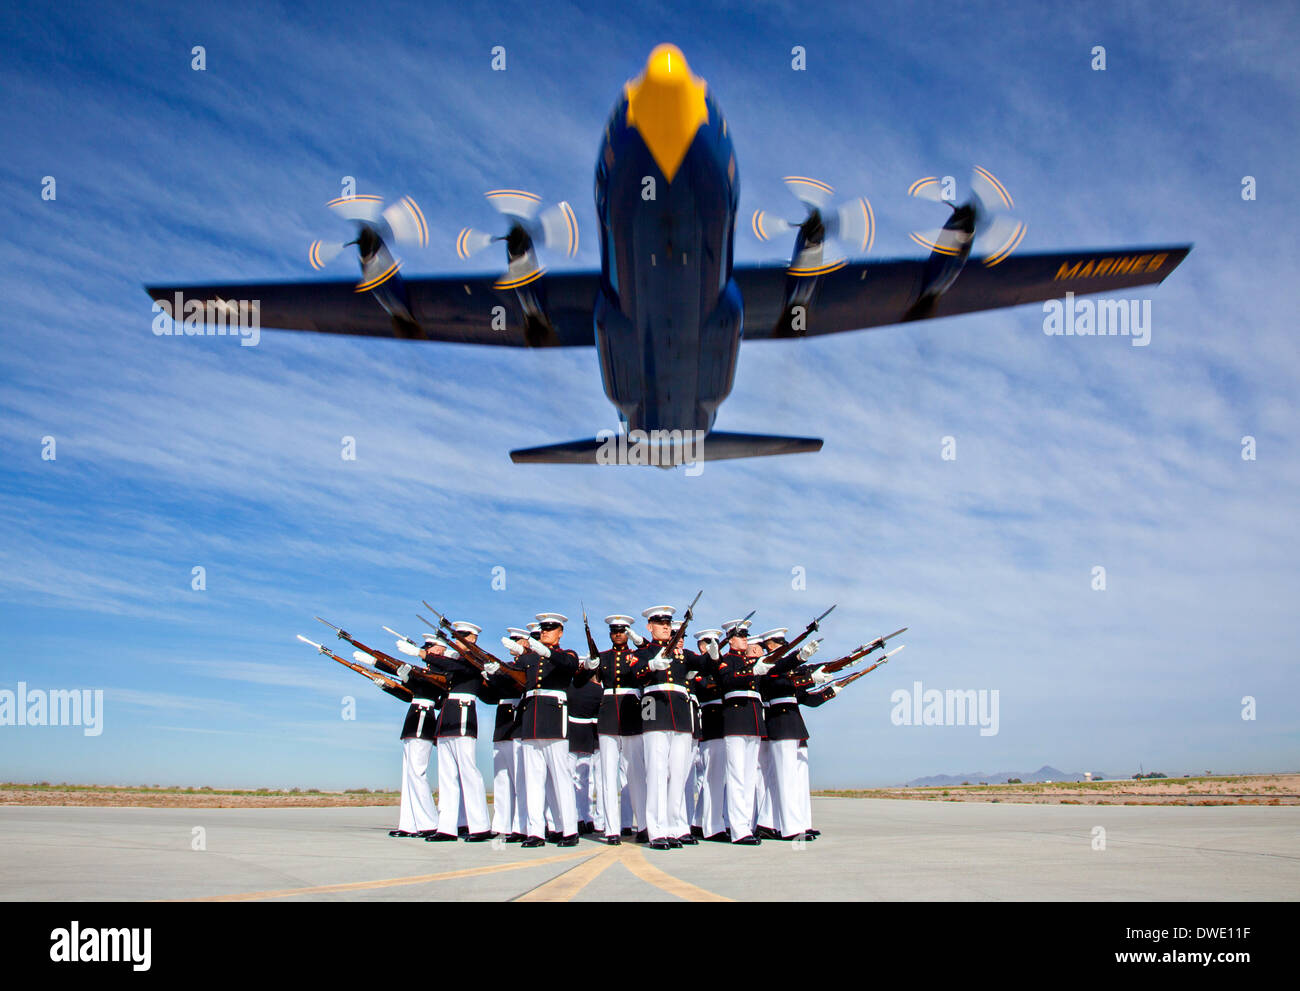 Les Blue Angels de l'US Marine Corps C-130 Hercules, affectueusement connu sous le nom de Fat Albert, survole silencieuse pendant la répétition pour un spectacle aérien le 4 mars 2014 au Marine Corps Air Station Yuma, Arizona. Banque D'Images